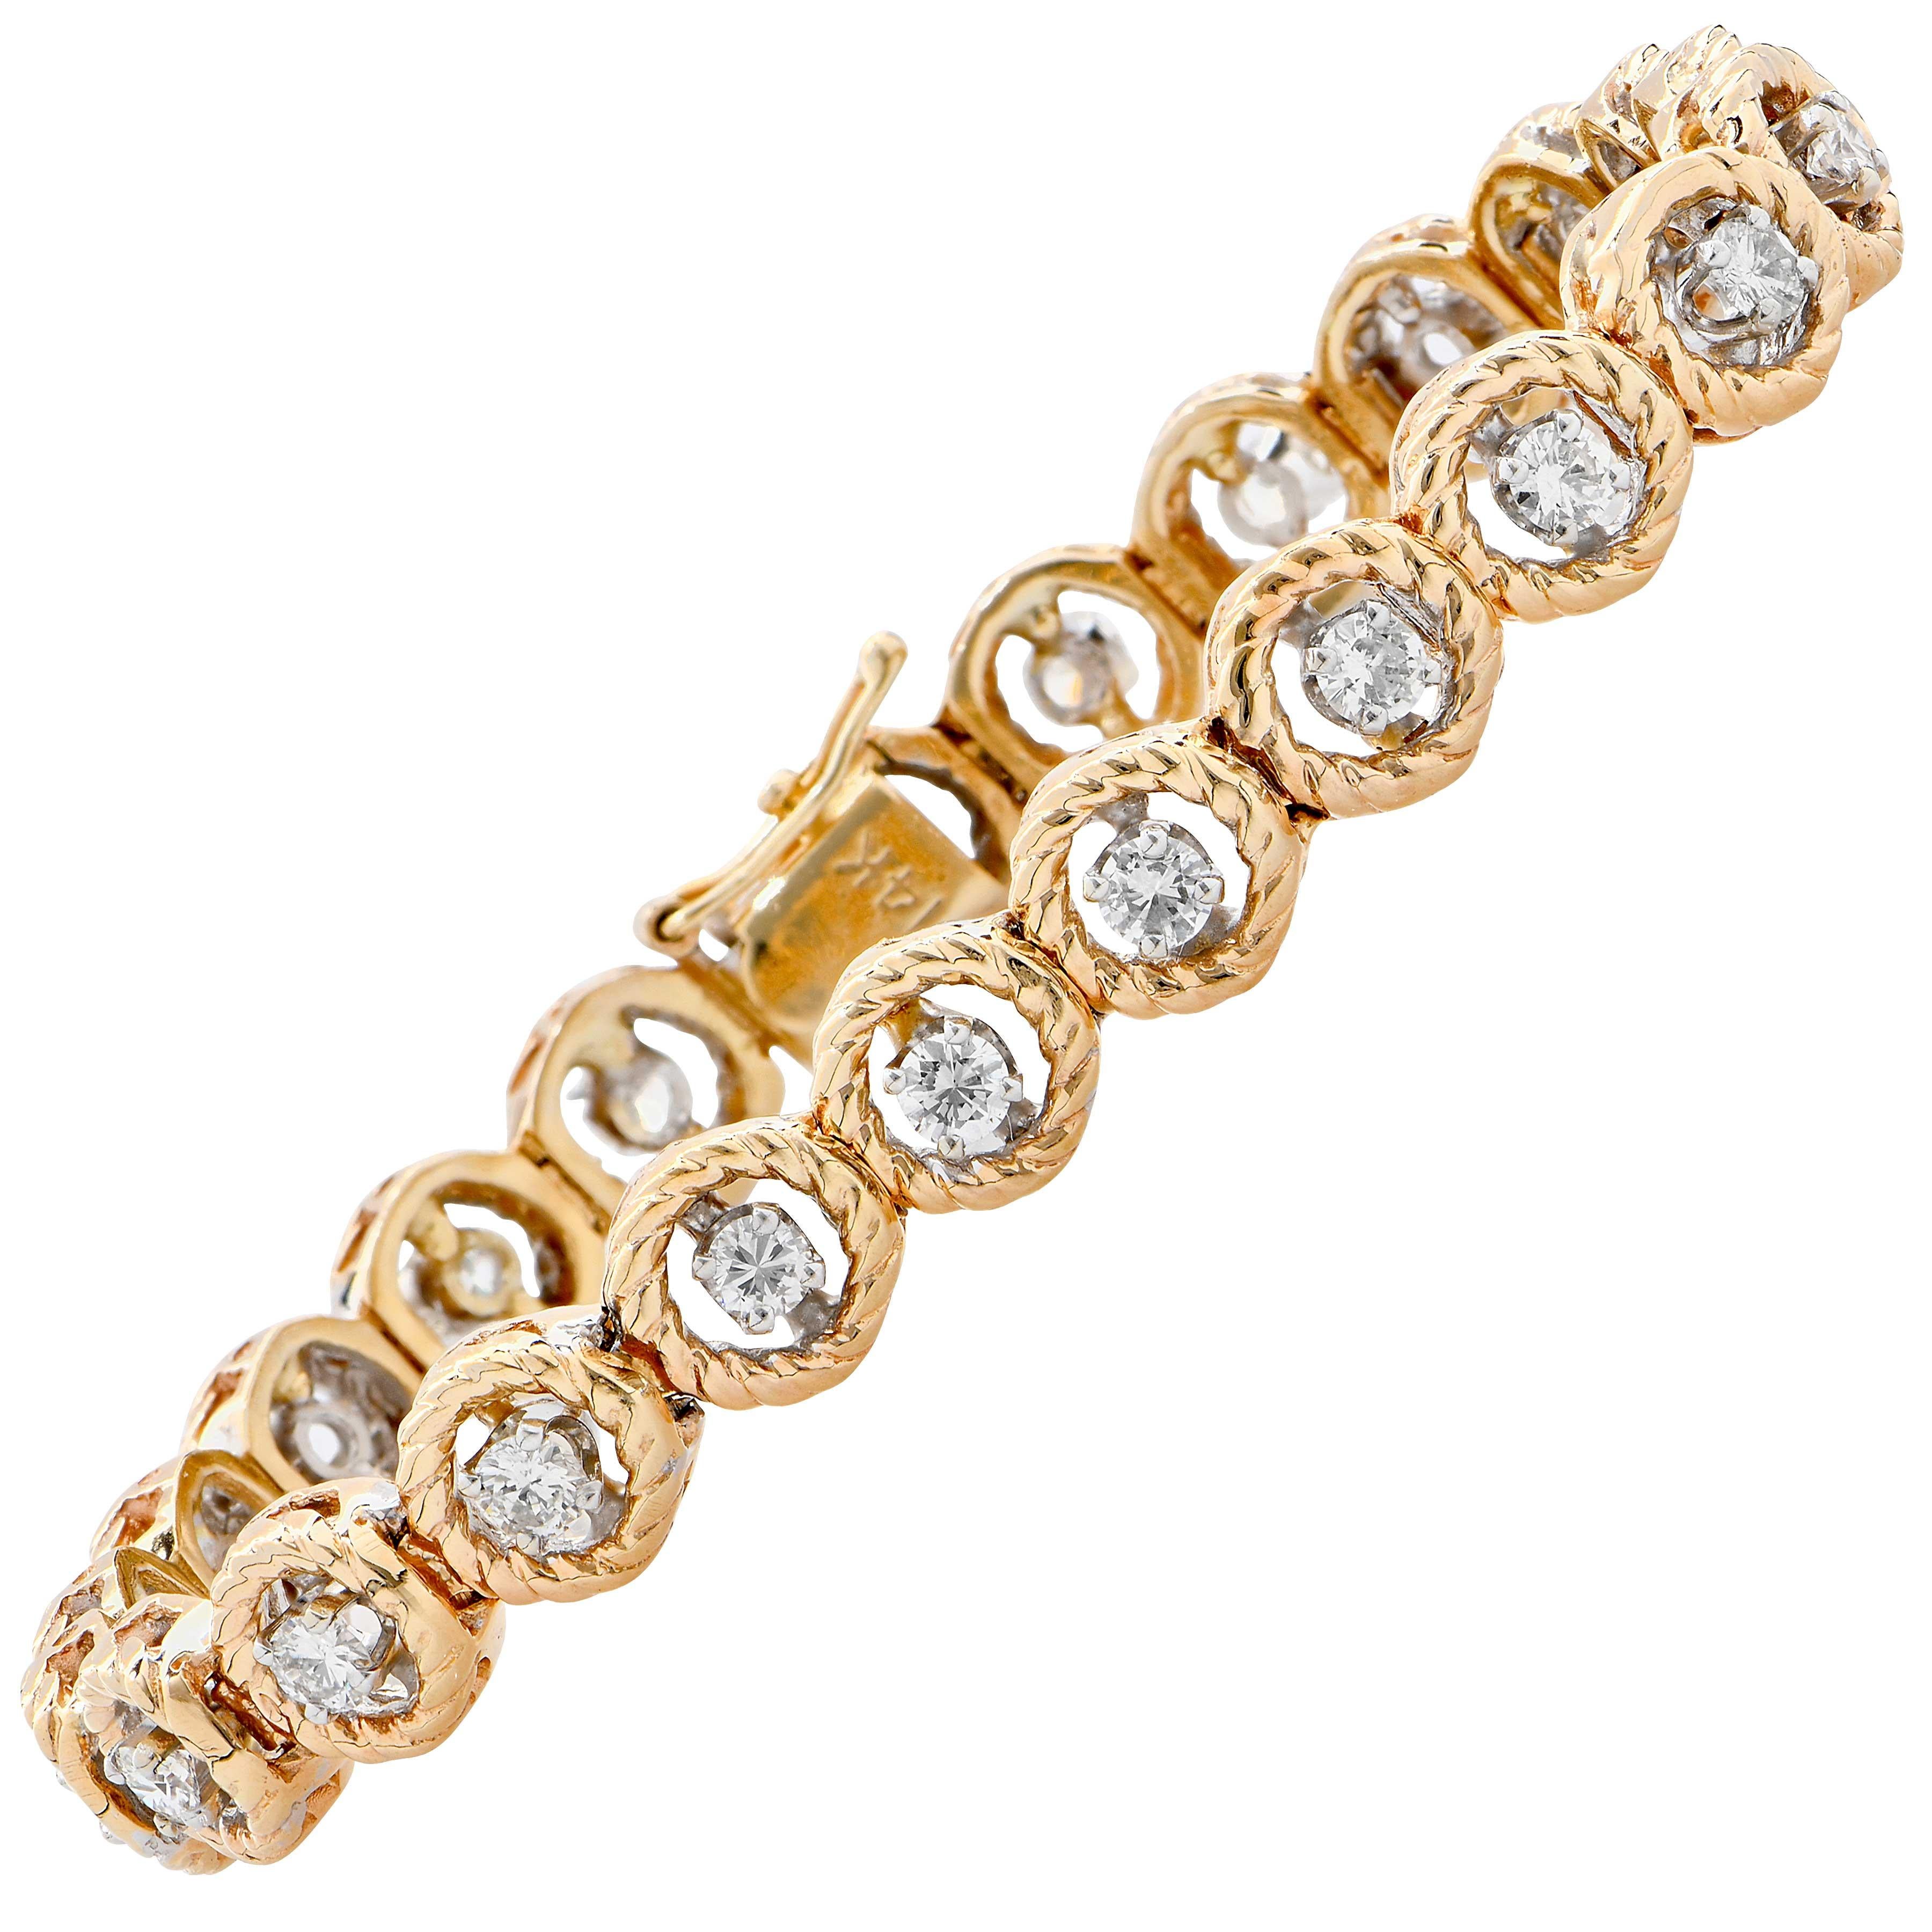 2.3 Carat Diamond Bracelet Set in 14 Karat Yellow and White Gold